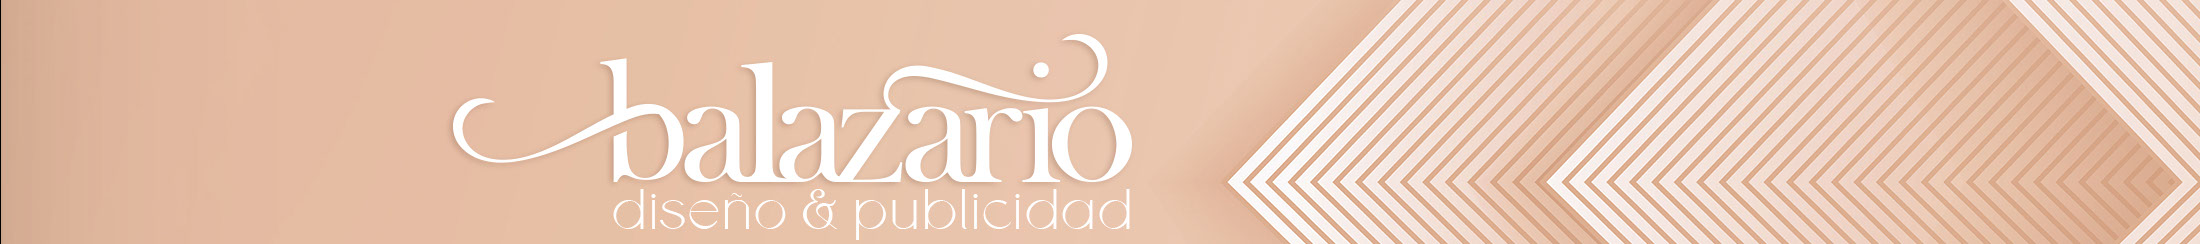 Banner de perfil de Mariana Balanzario